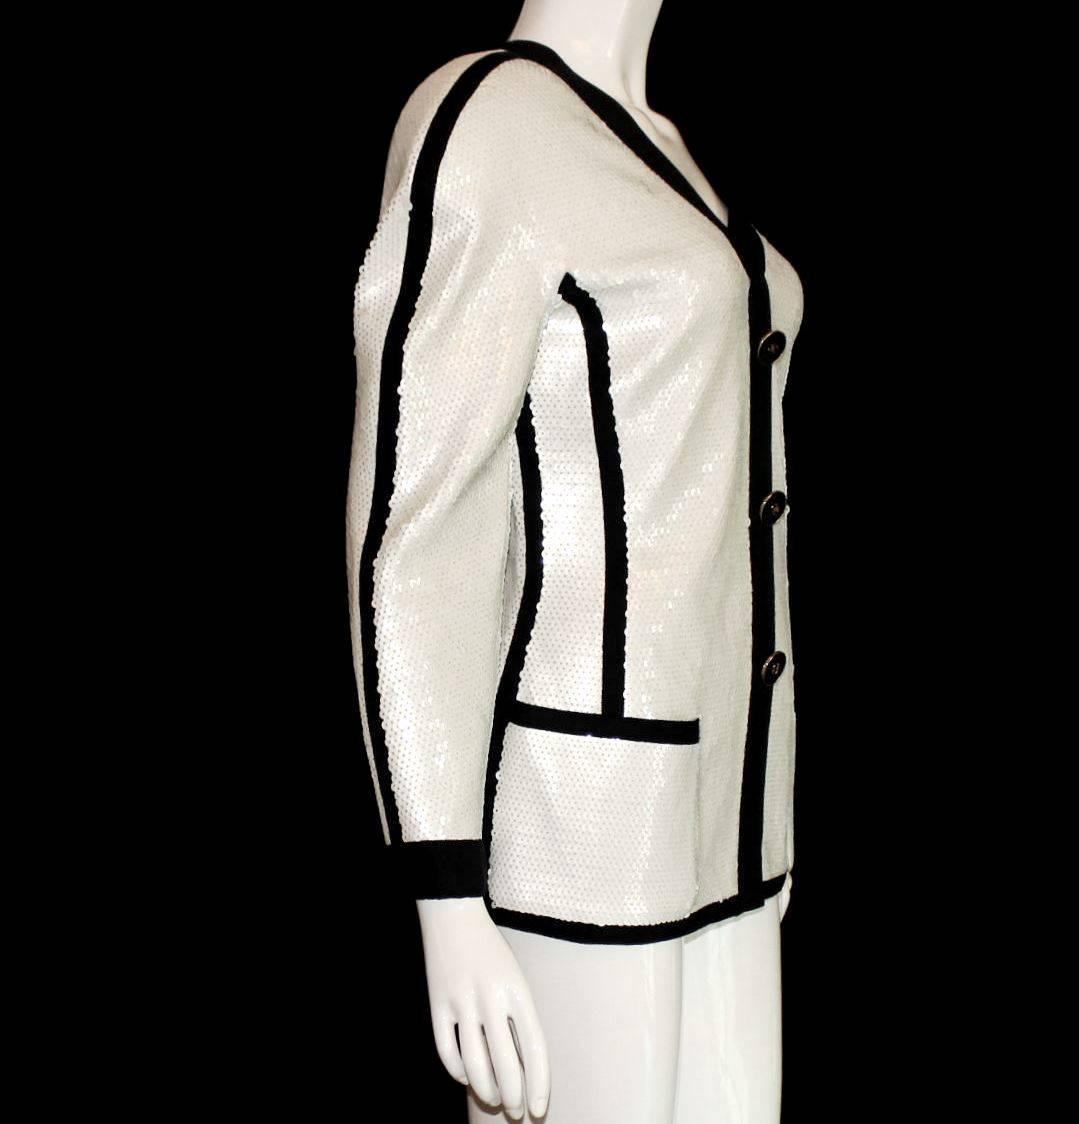 Eine äußerst seltene Chanel-Jacke aus den frühen 1990er Jahren
Gesehen bei Vogue-Redakteurin Anna Wintour
Teil der Ausstellung im Metropolitan Museum in NY im Jahr 2005
Weiße Paillettenjacke mit schwarzem Besatz
Schließt mit einem versteckten